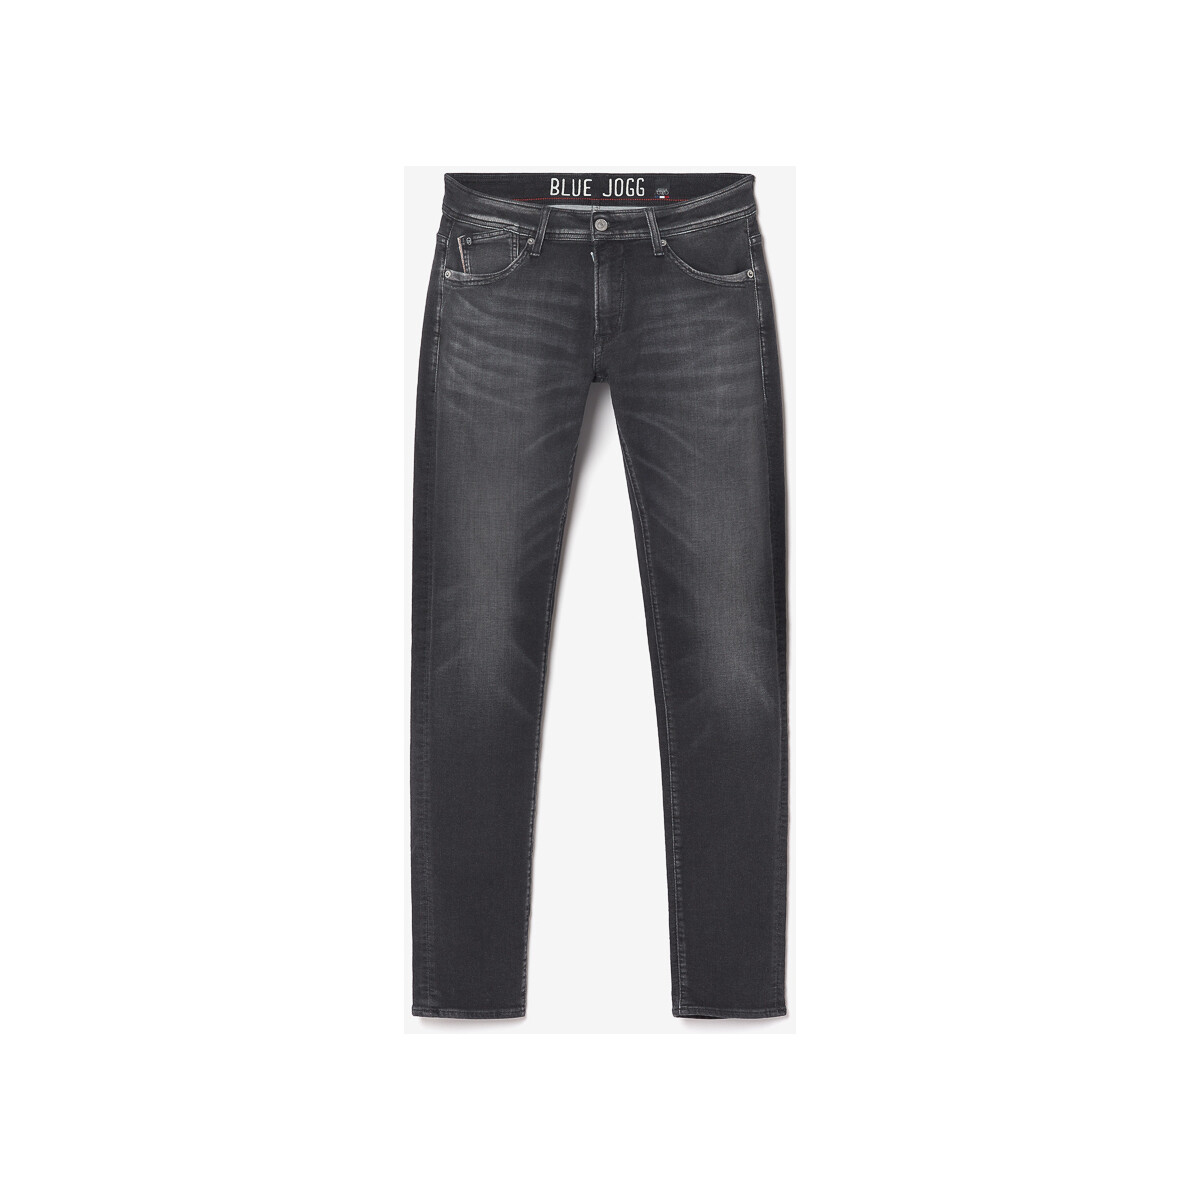 Le Temps des Cerises Noir Jogg 700/11 adjusted jeans no